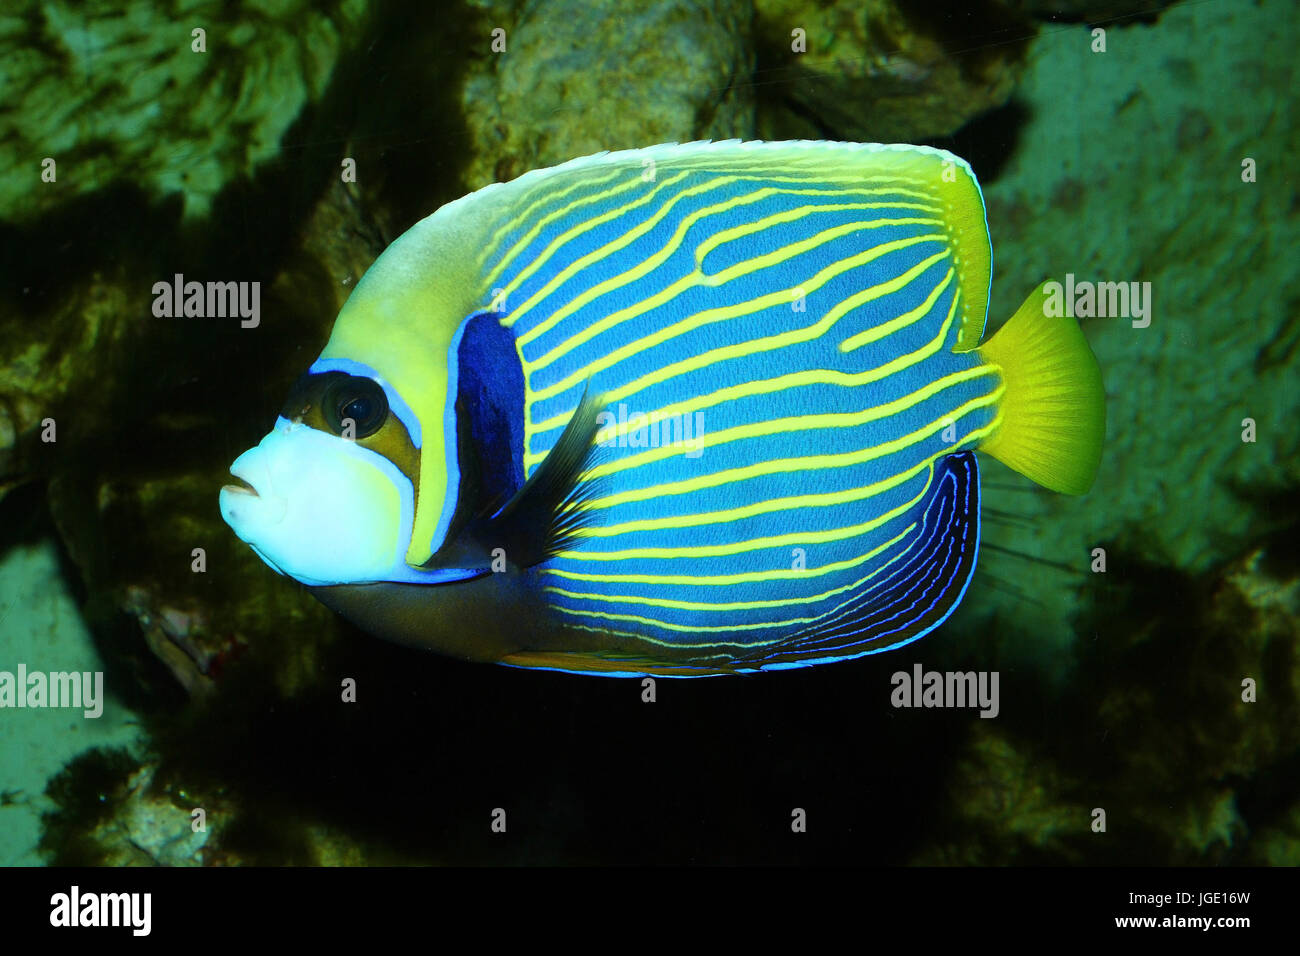 Imperial fish immagini e fotografie stock ad alta risoluzione - Alamy